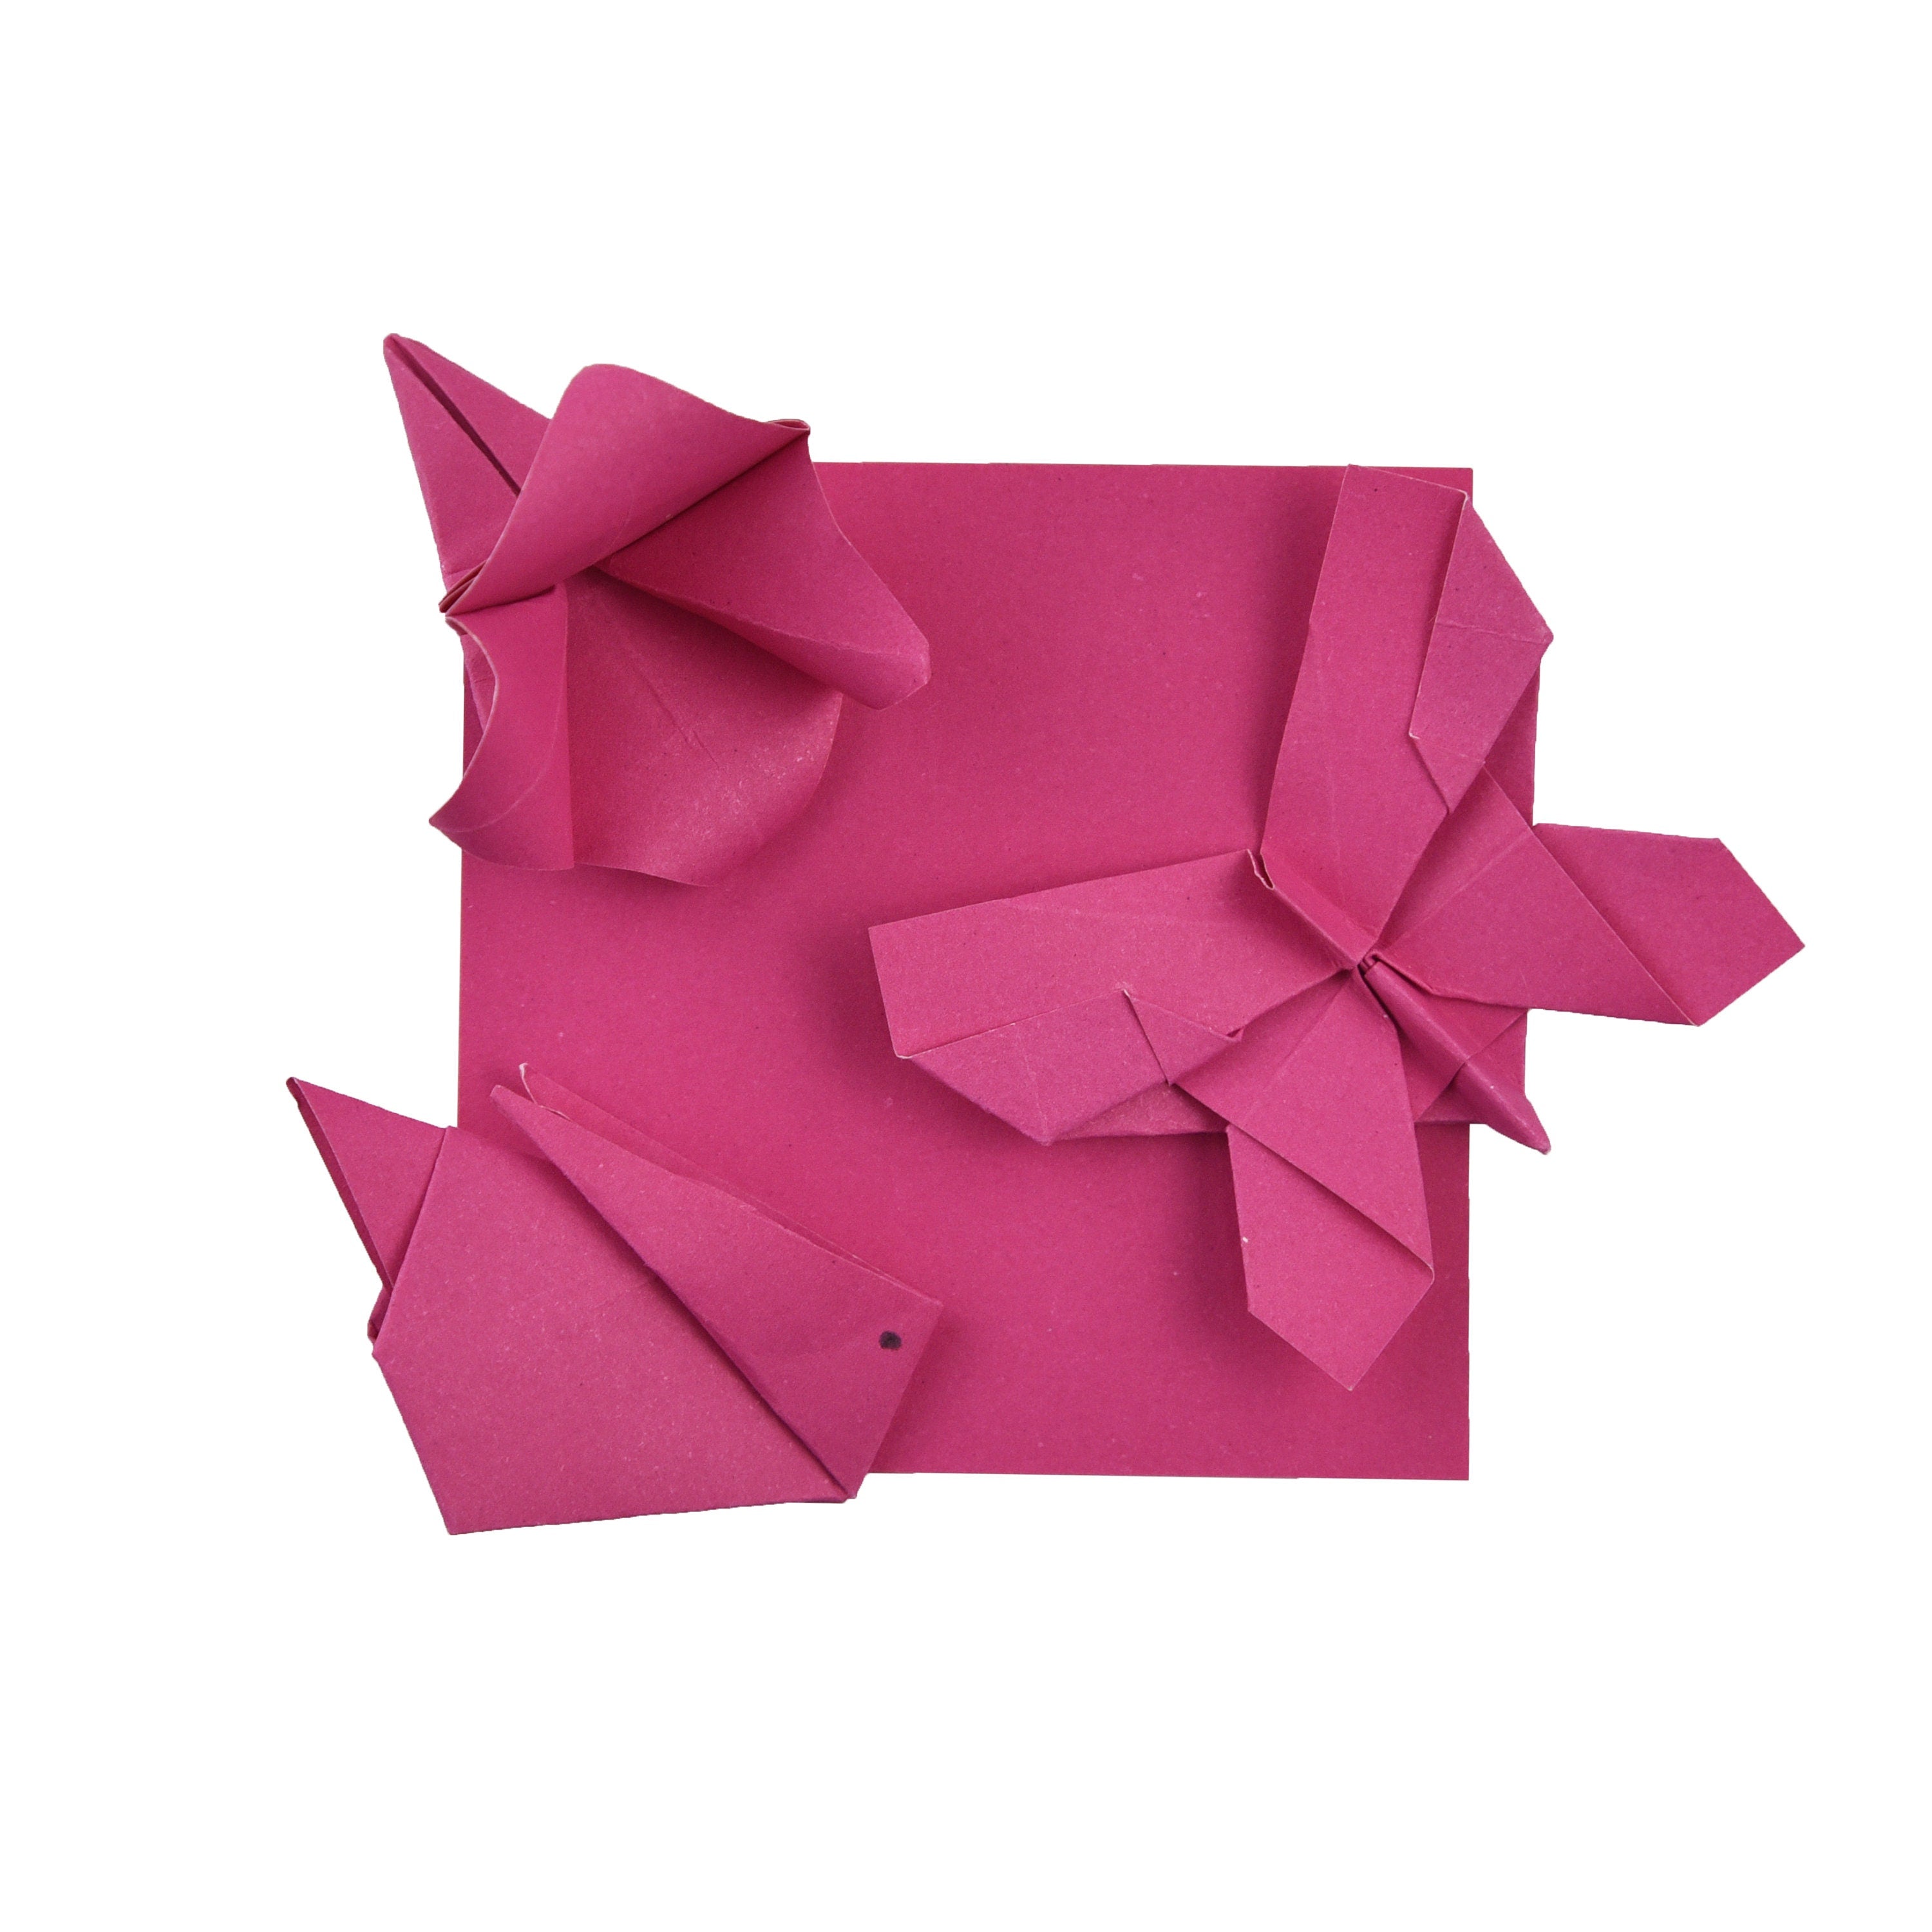 100 Hojas de Papel Origami - 6x6 pulgadas - Paquete de Papel Cuadrado para Plegar, Grullas de Origami y Decoración - S14